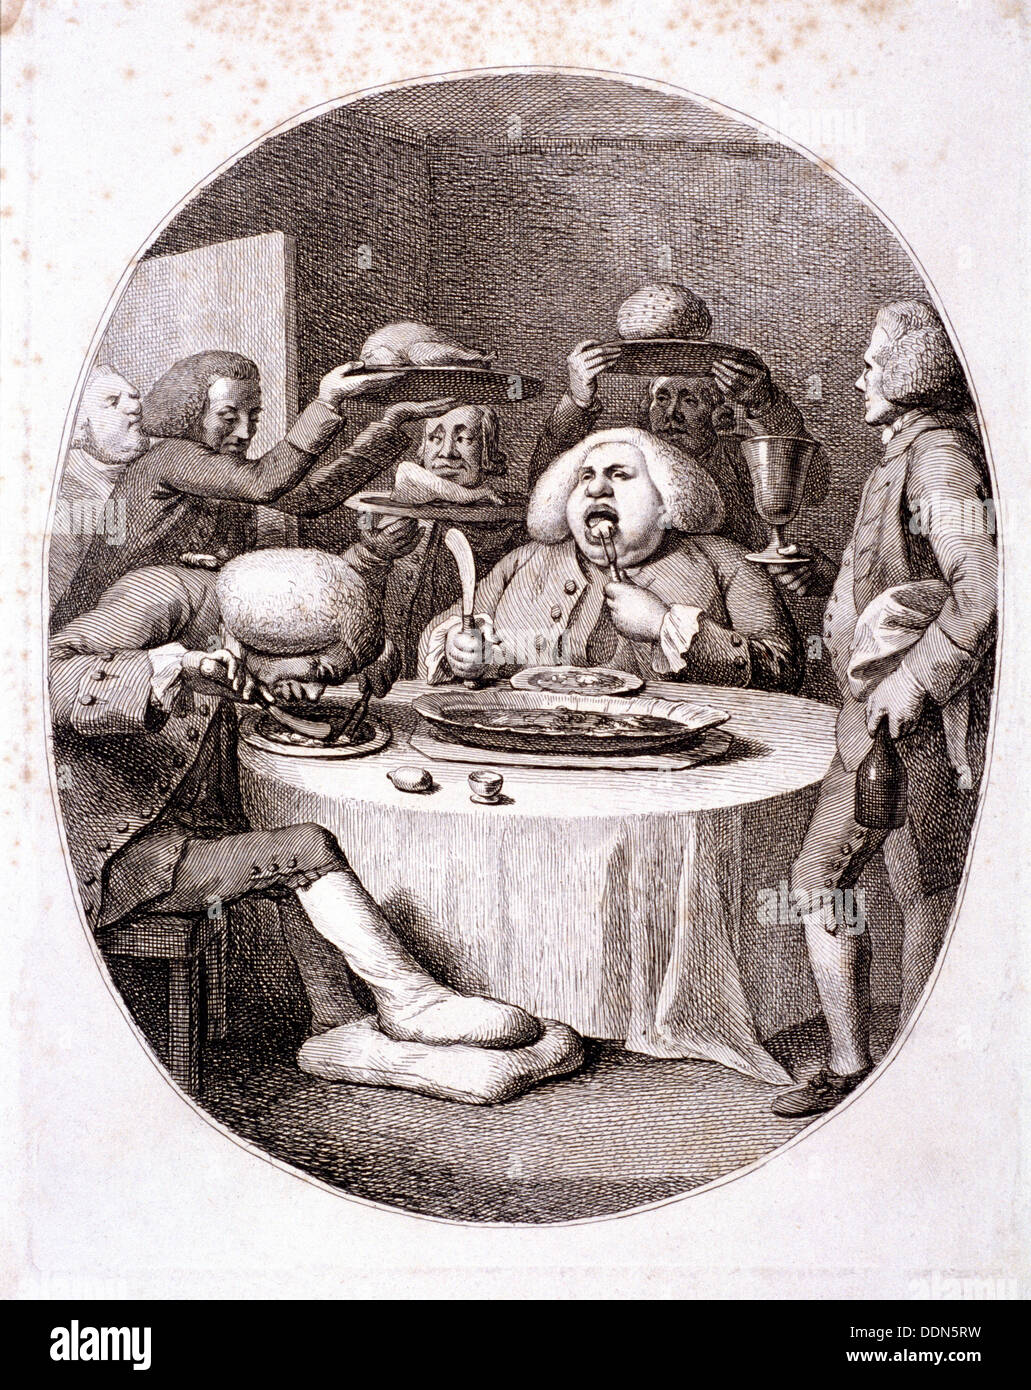 The alderman's dinner, 1775. Artist: Anon Stock Photo